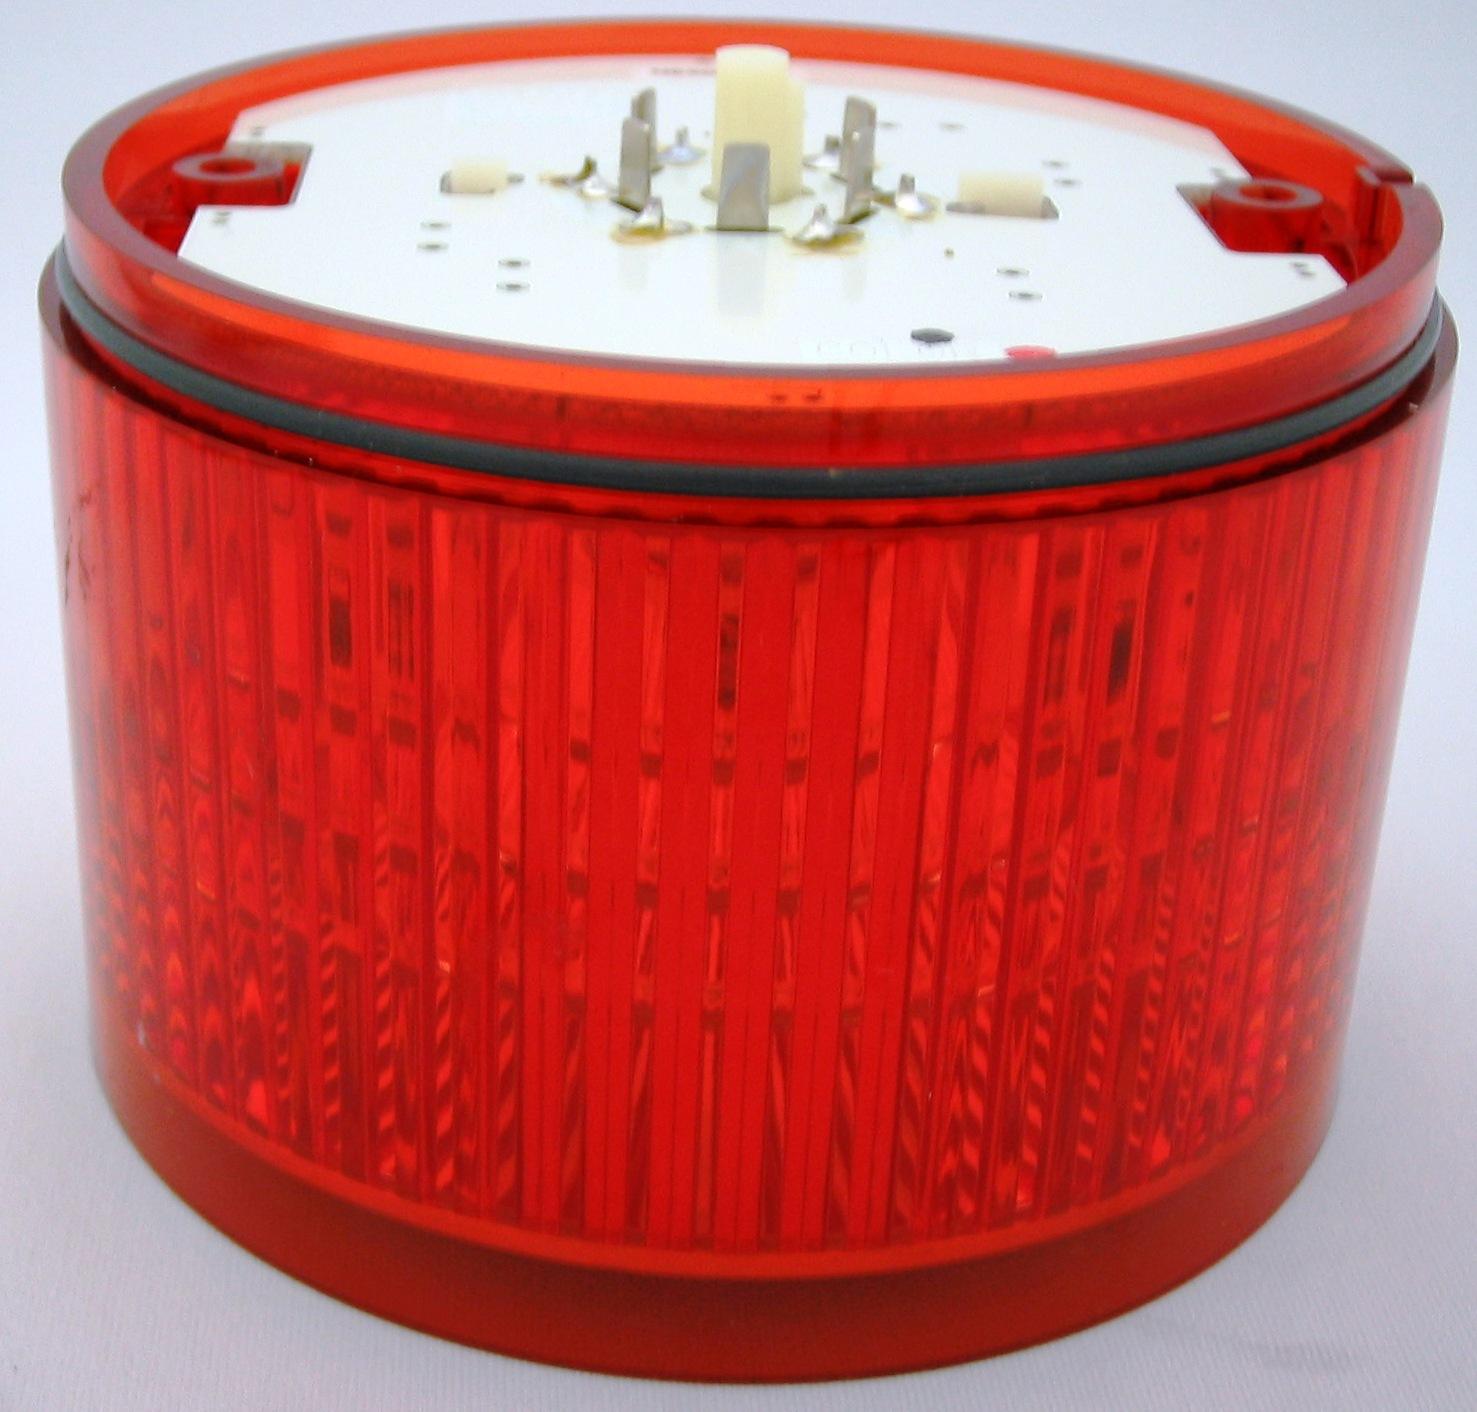 パトライト型式:LKEH-420FA-RGBCLED積層信号灯付き電子音報知器段数：4段定格電圧：AC200V音色タイプ：Aタイプ色(左より上段)：赤・緑・青・白適合規格：標準モデル消費電力：26W質量：2.7kg